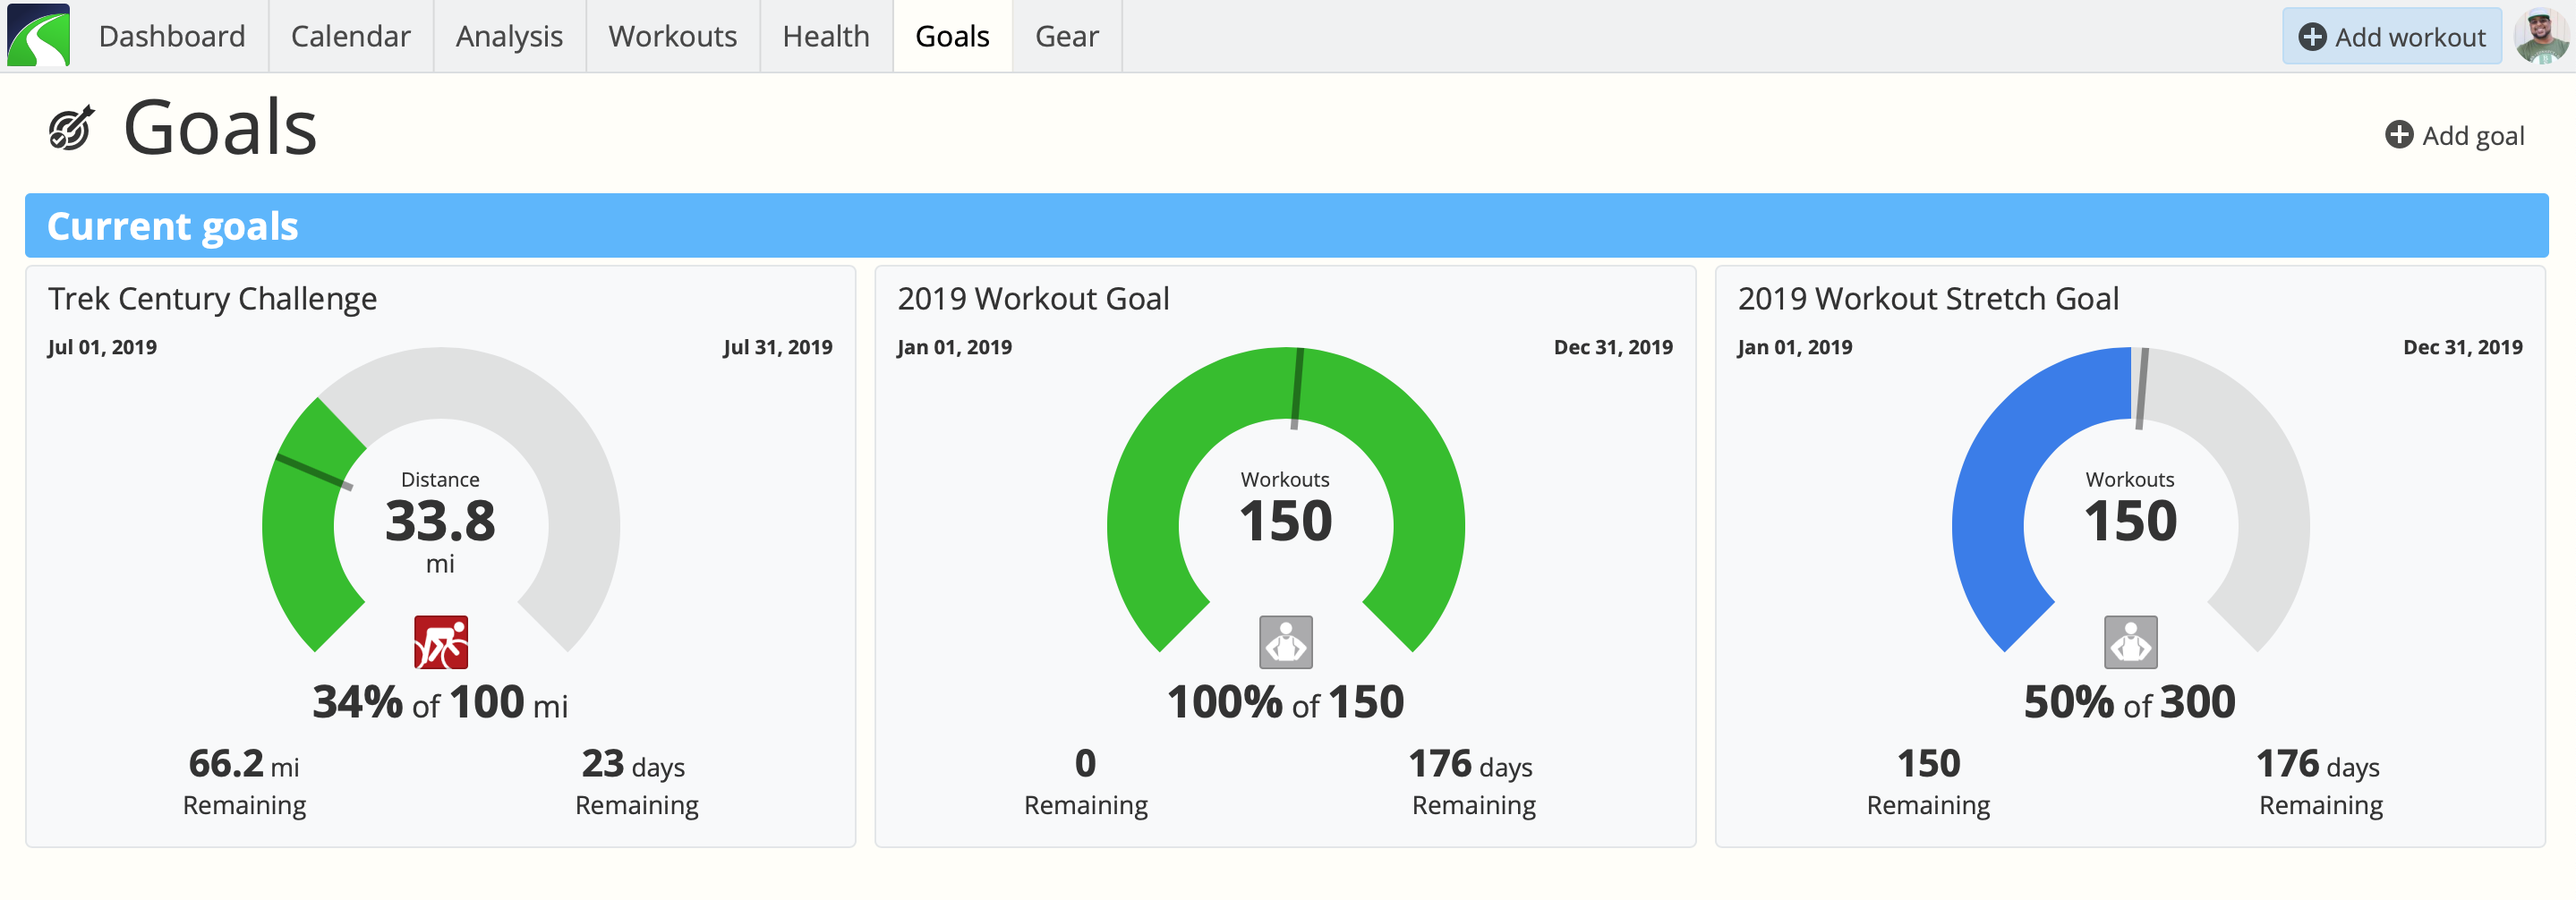 My 2019 Workout Goals